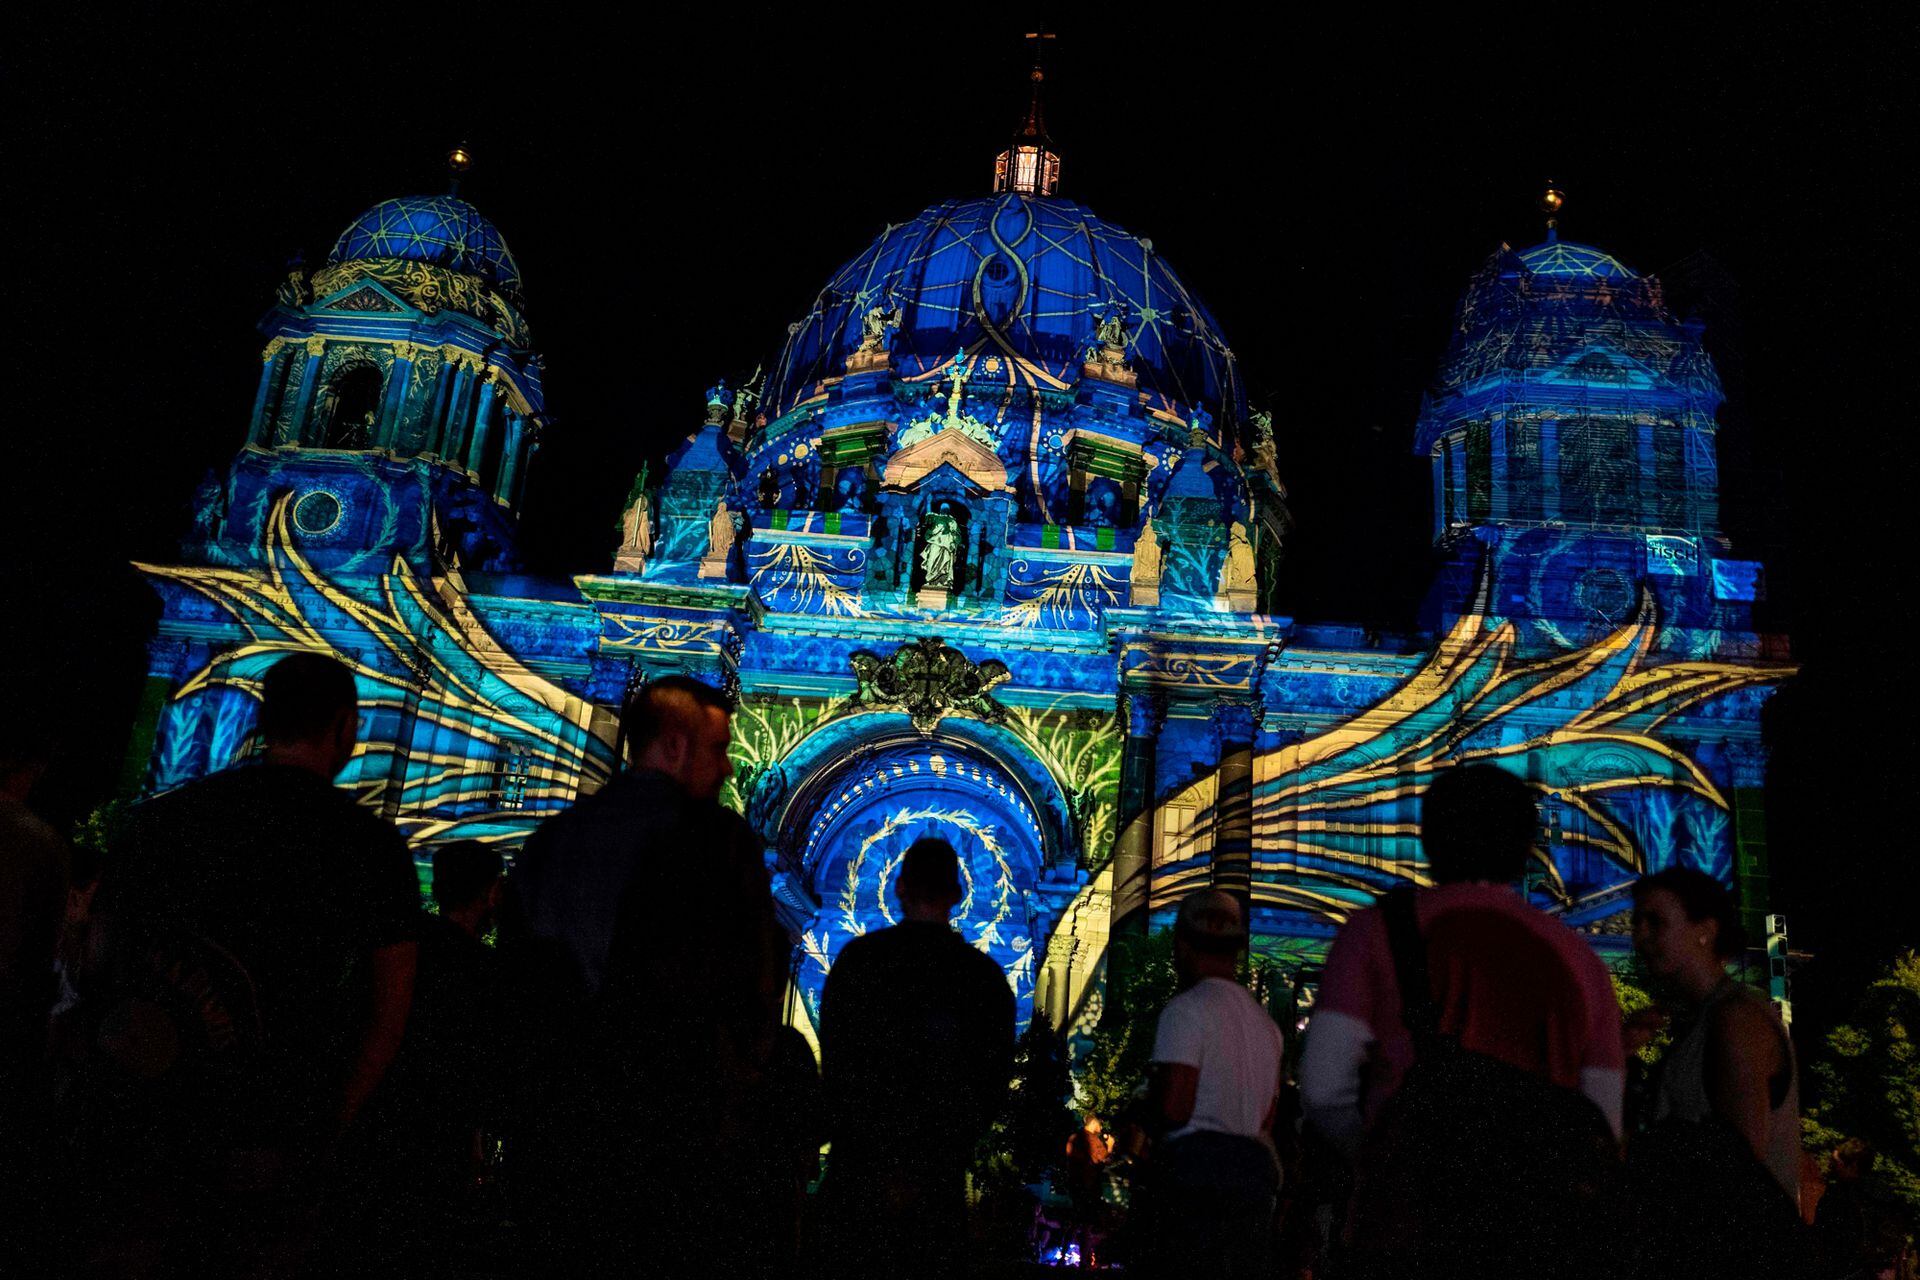 El Festival de luces de Berlín, es uno de los festivales de arte más famosos del mundo